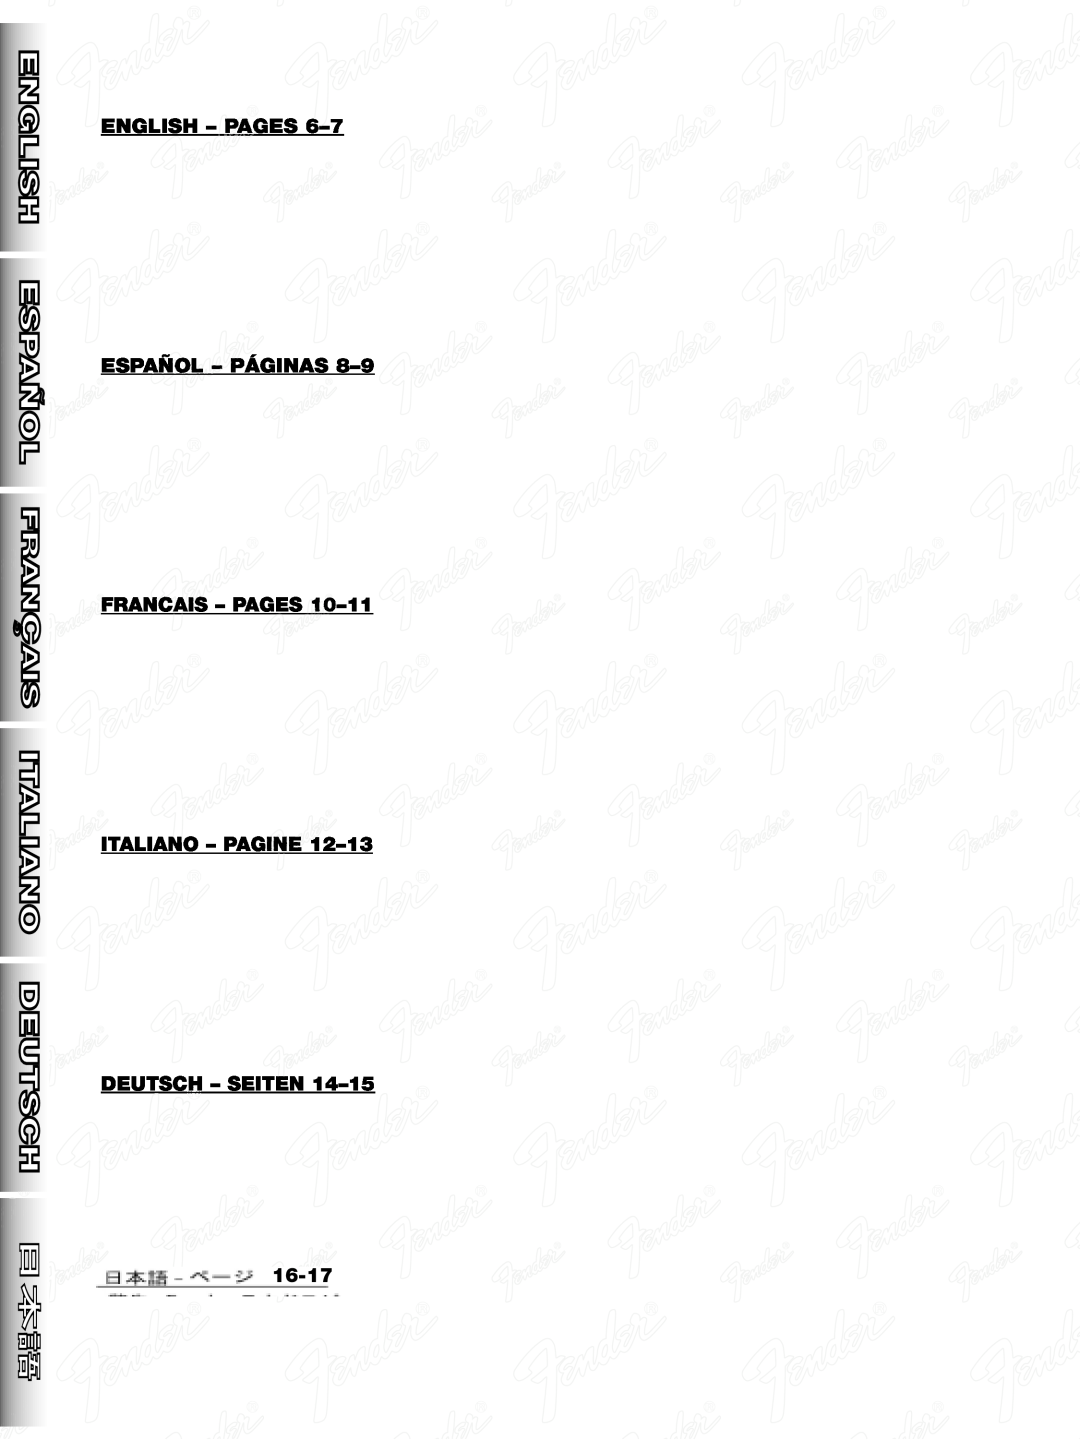 Fender 25 manual ENGLISH - PAGES 6-7 ESPAÑOL - PÁGINAS, FRANCAIS - PAGES 10-11 ITALIANO - PAGINE, Deutsch - Seiten, 16-17 